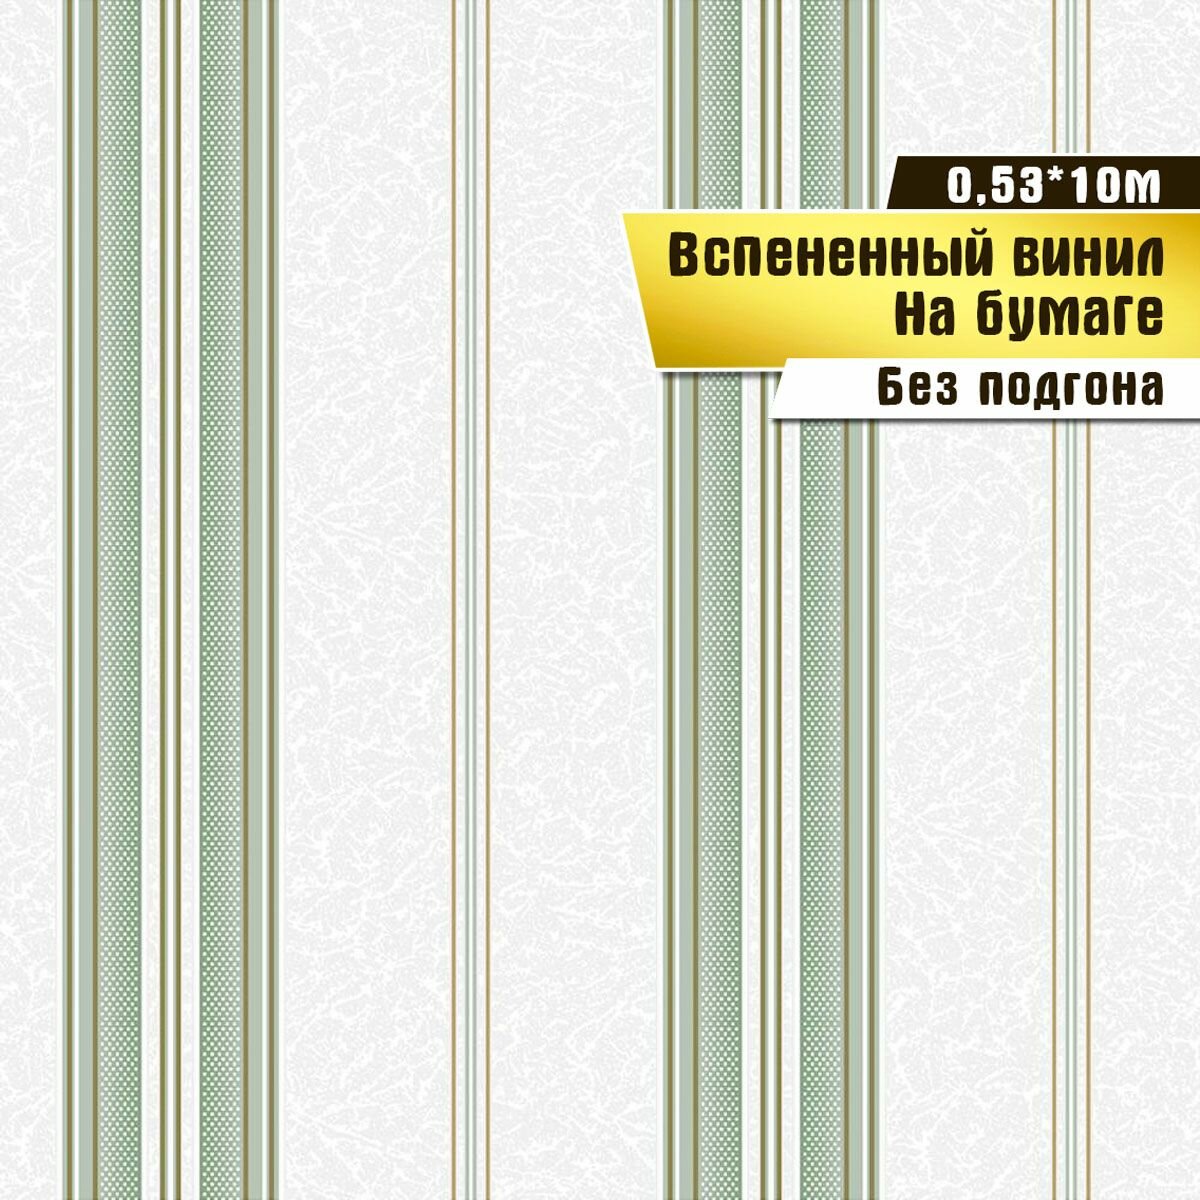 Обои вспененный винил на бумаге, Саратовская обойная фабрика, "Ришелье полоса" арт. 231-04, 0,53*10м.